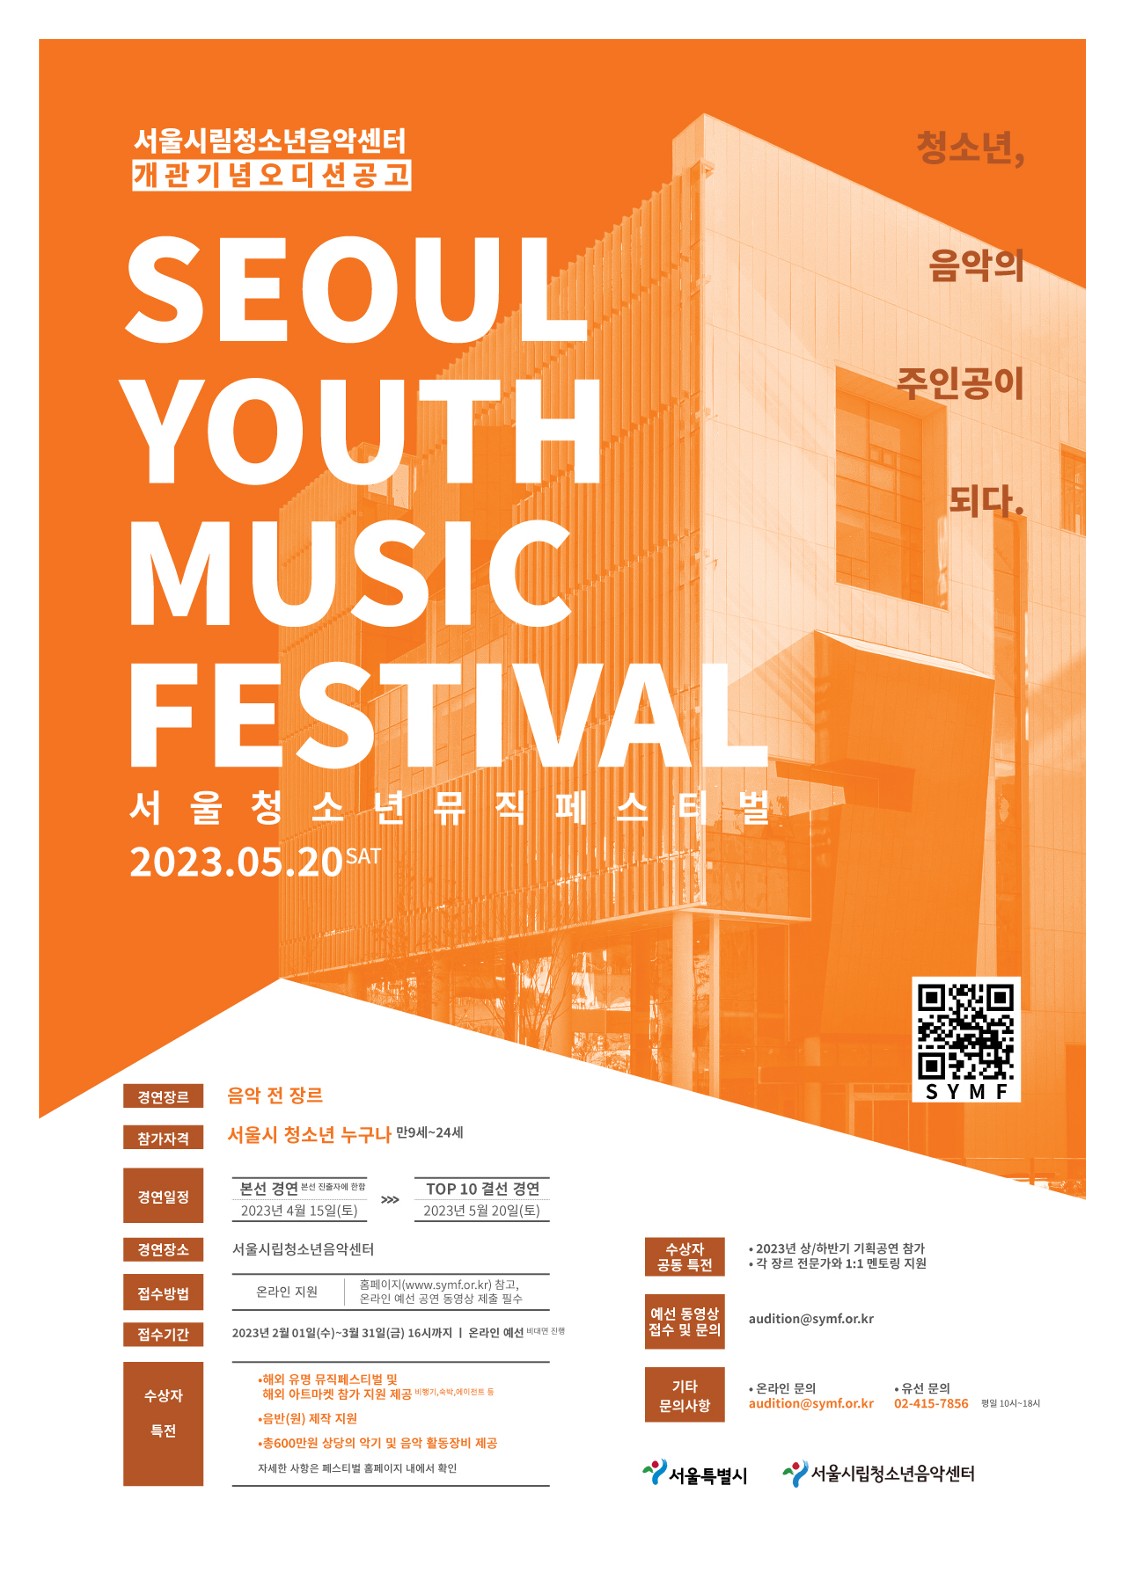 SYMF 서울 청소년 뮤직 페스티벌: Seoul Youth Music Festival